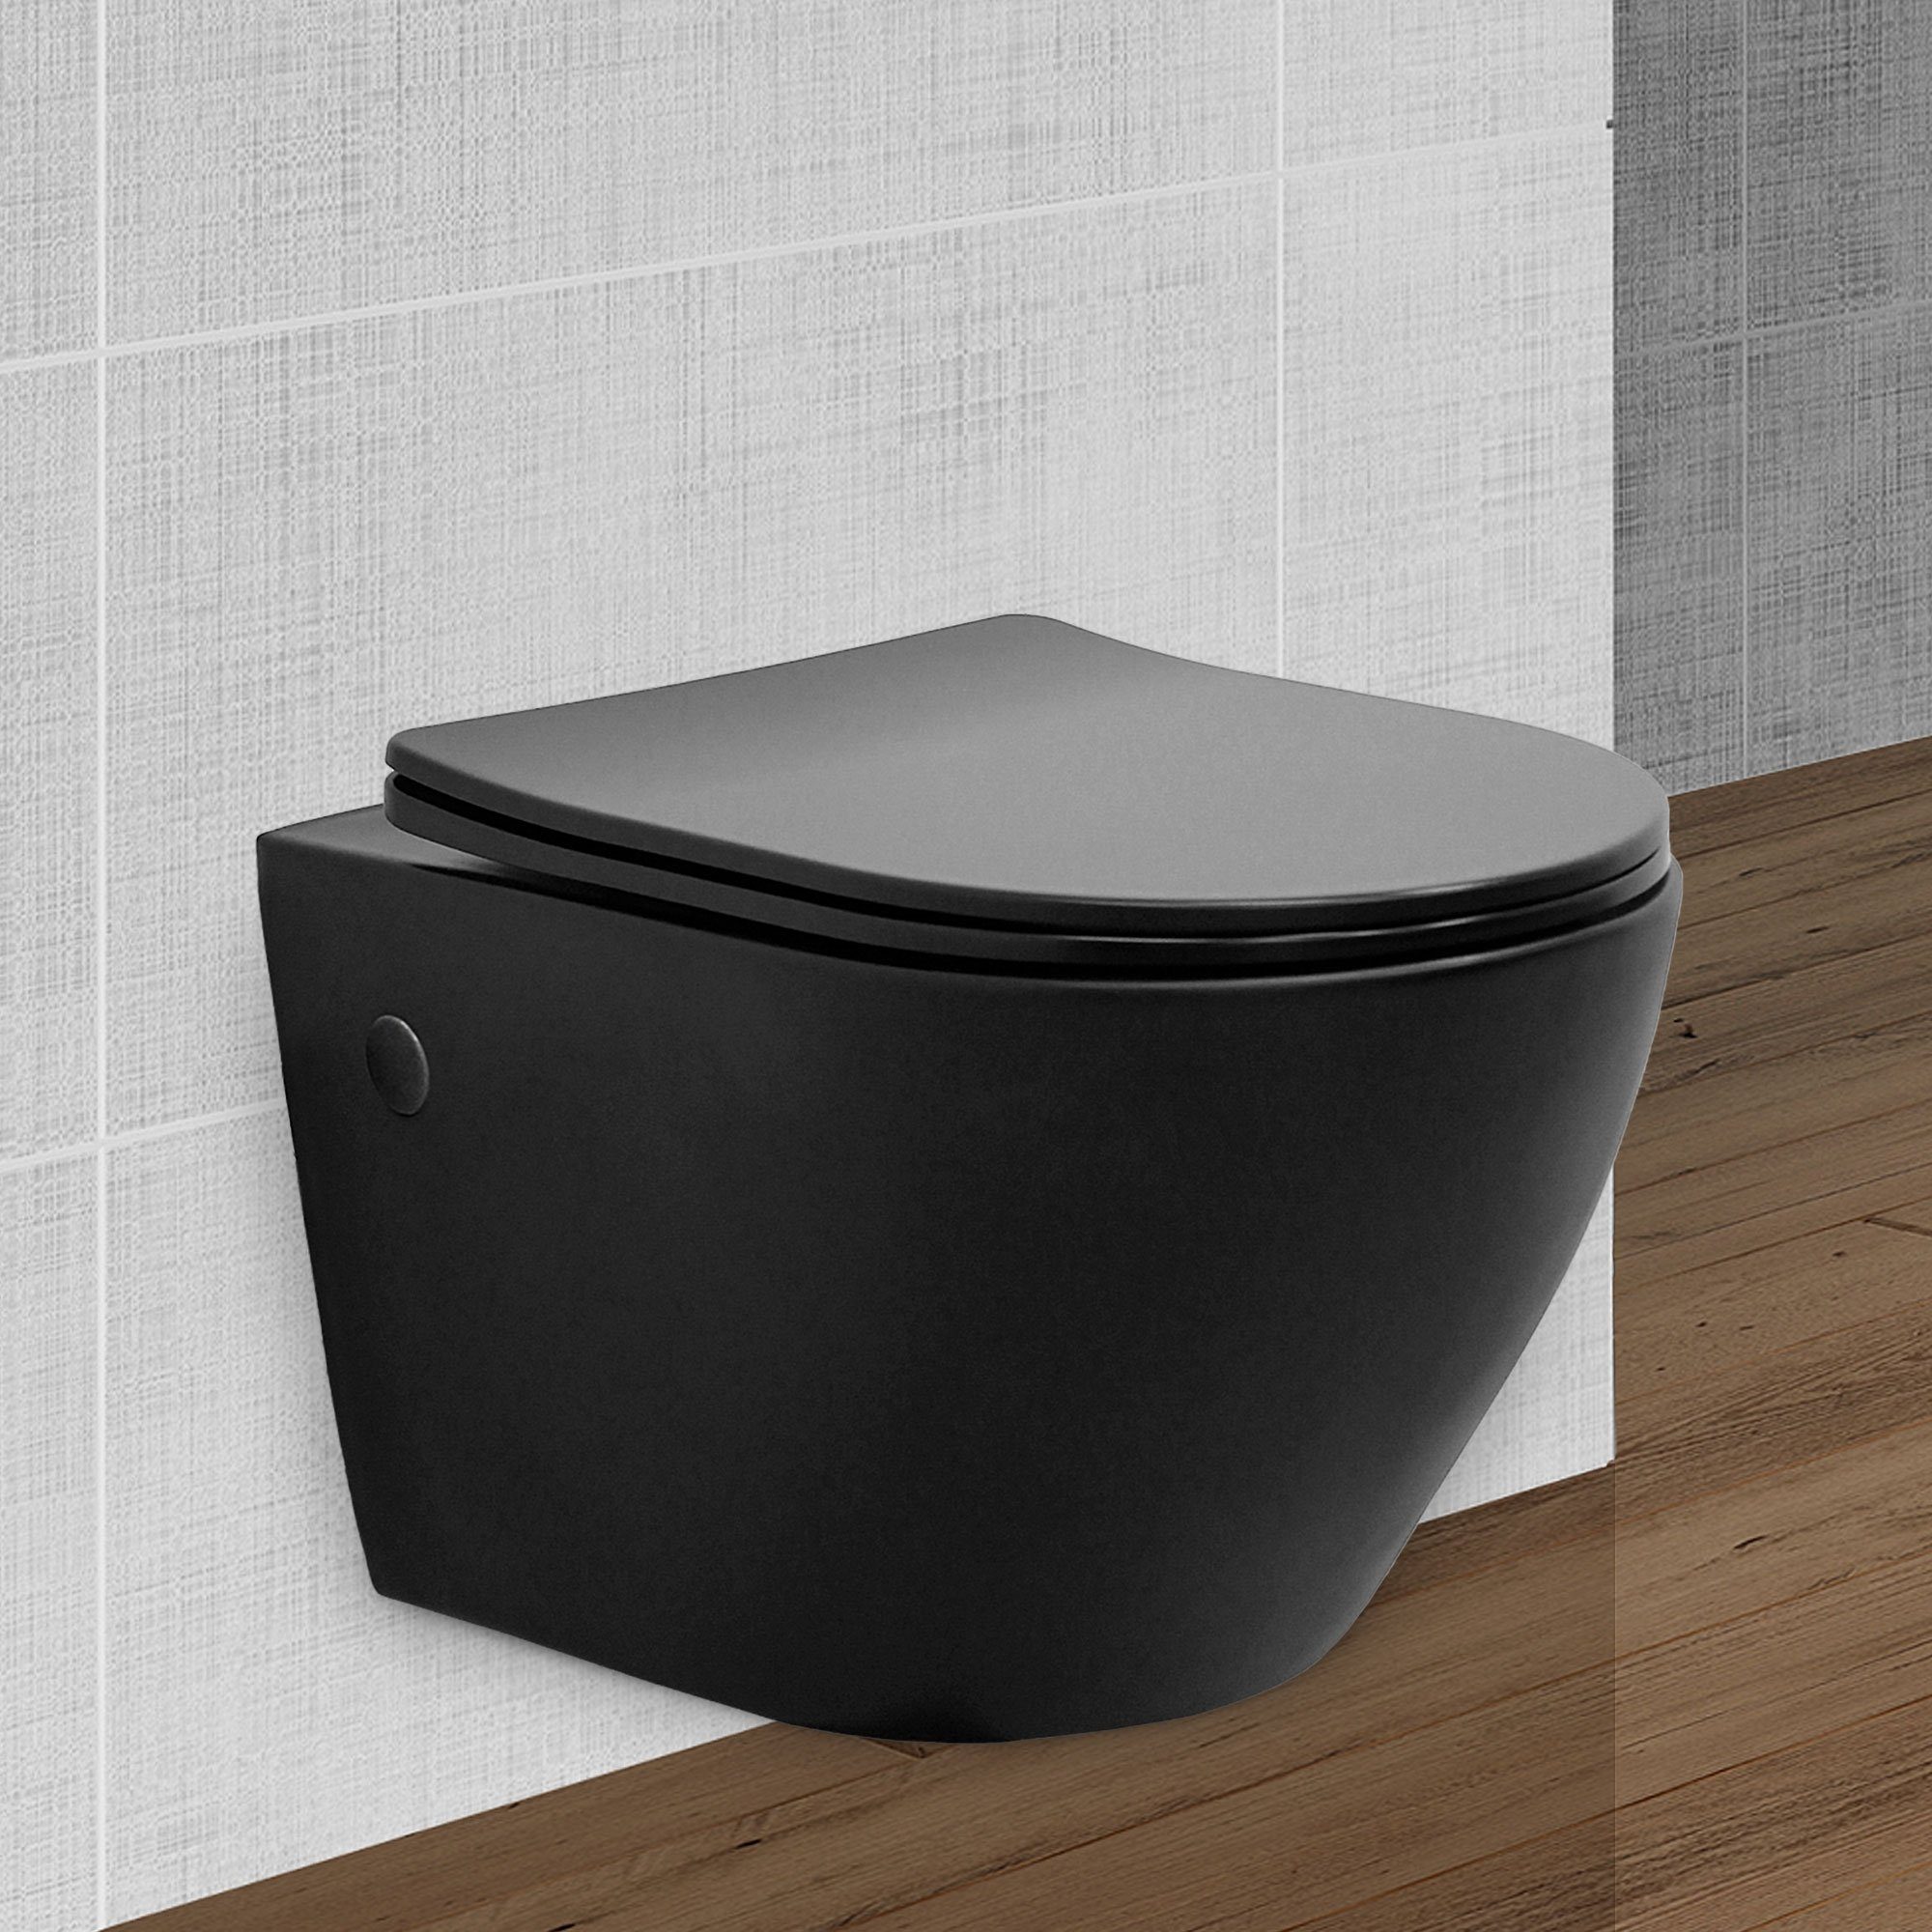 ECD Germany Tiefspül-WC Wand-WC Toilette Sanitärkeramik, Spülrandlos  schwarz matt WC-Sitz abnehmbar Softclose Absenkautomatik